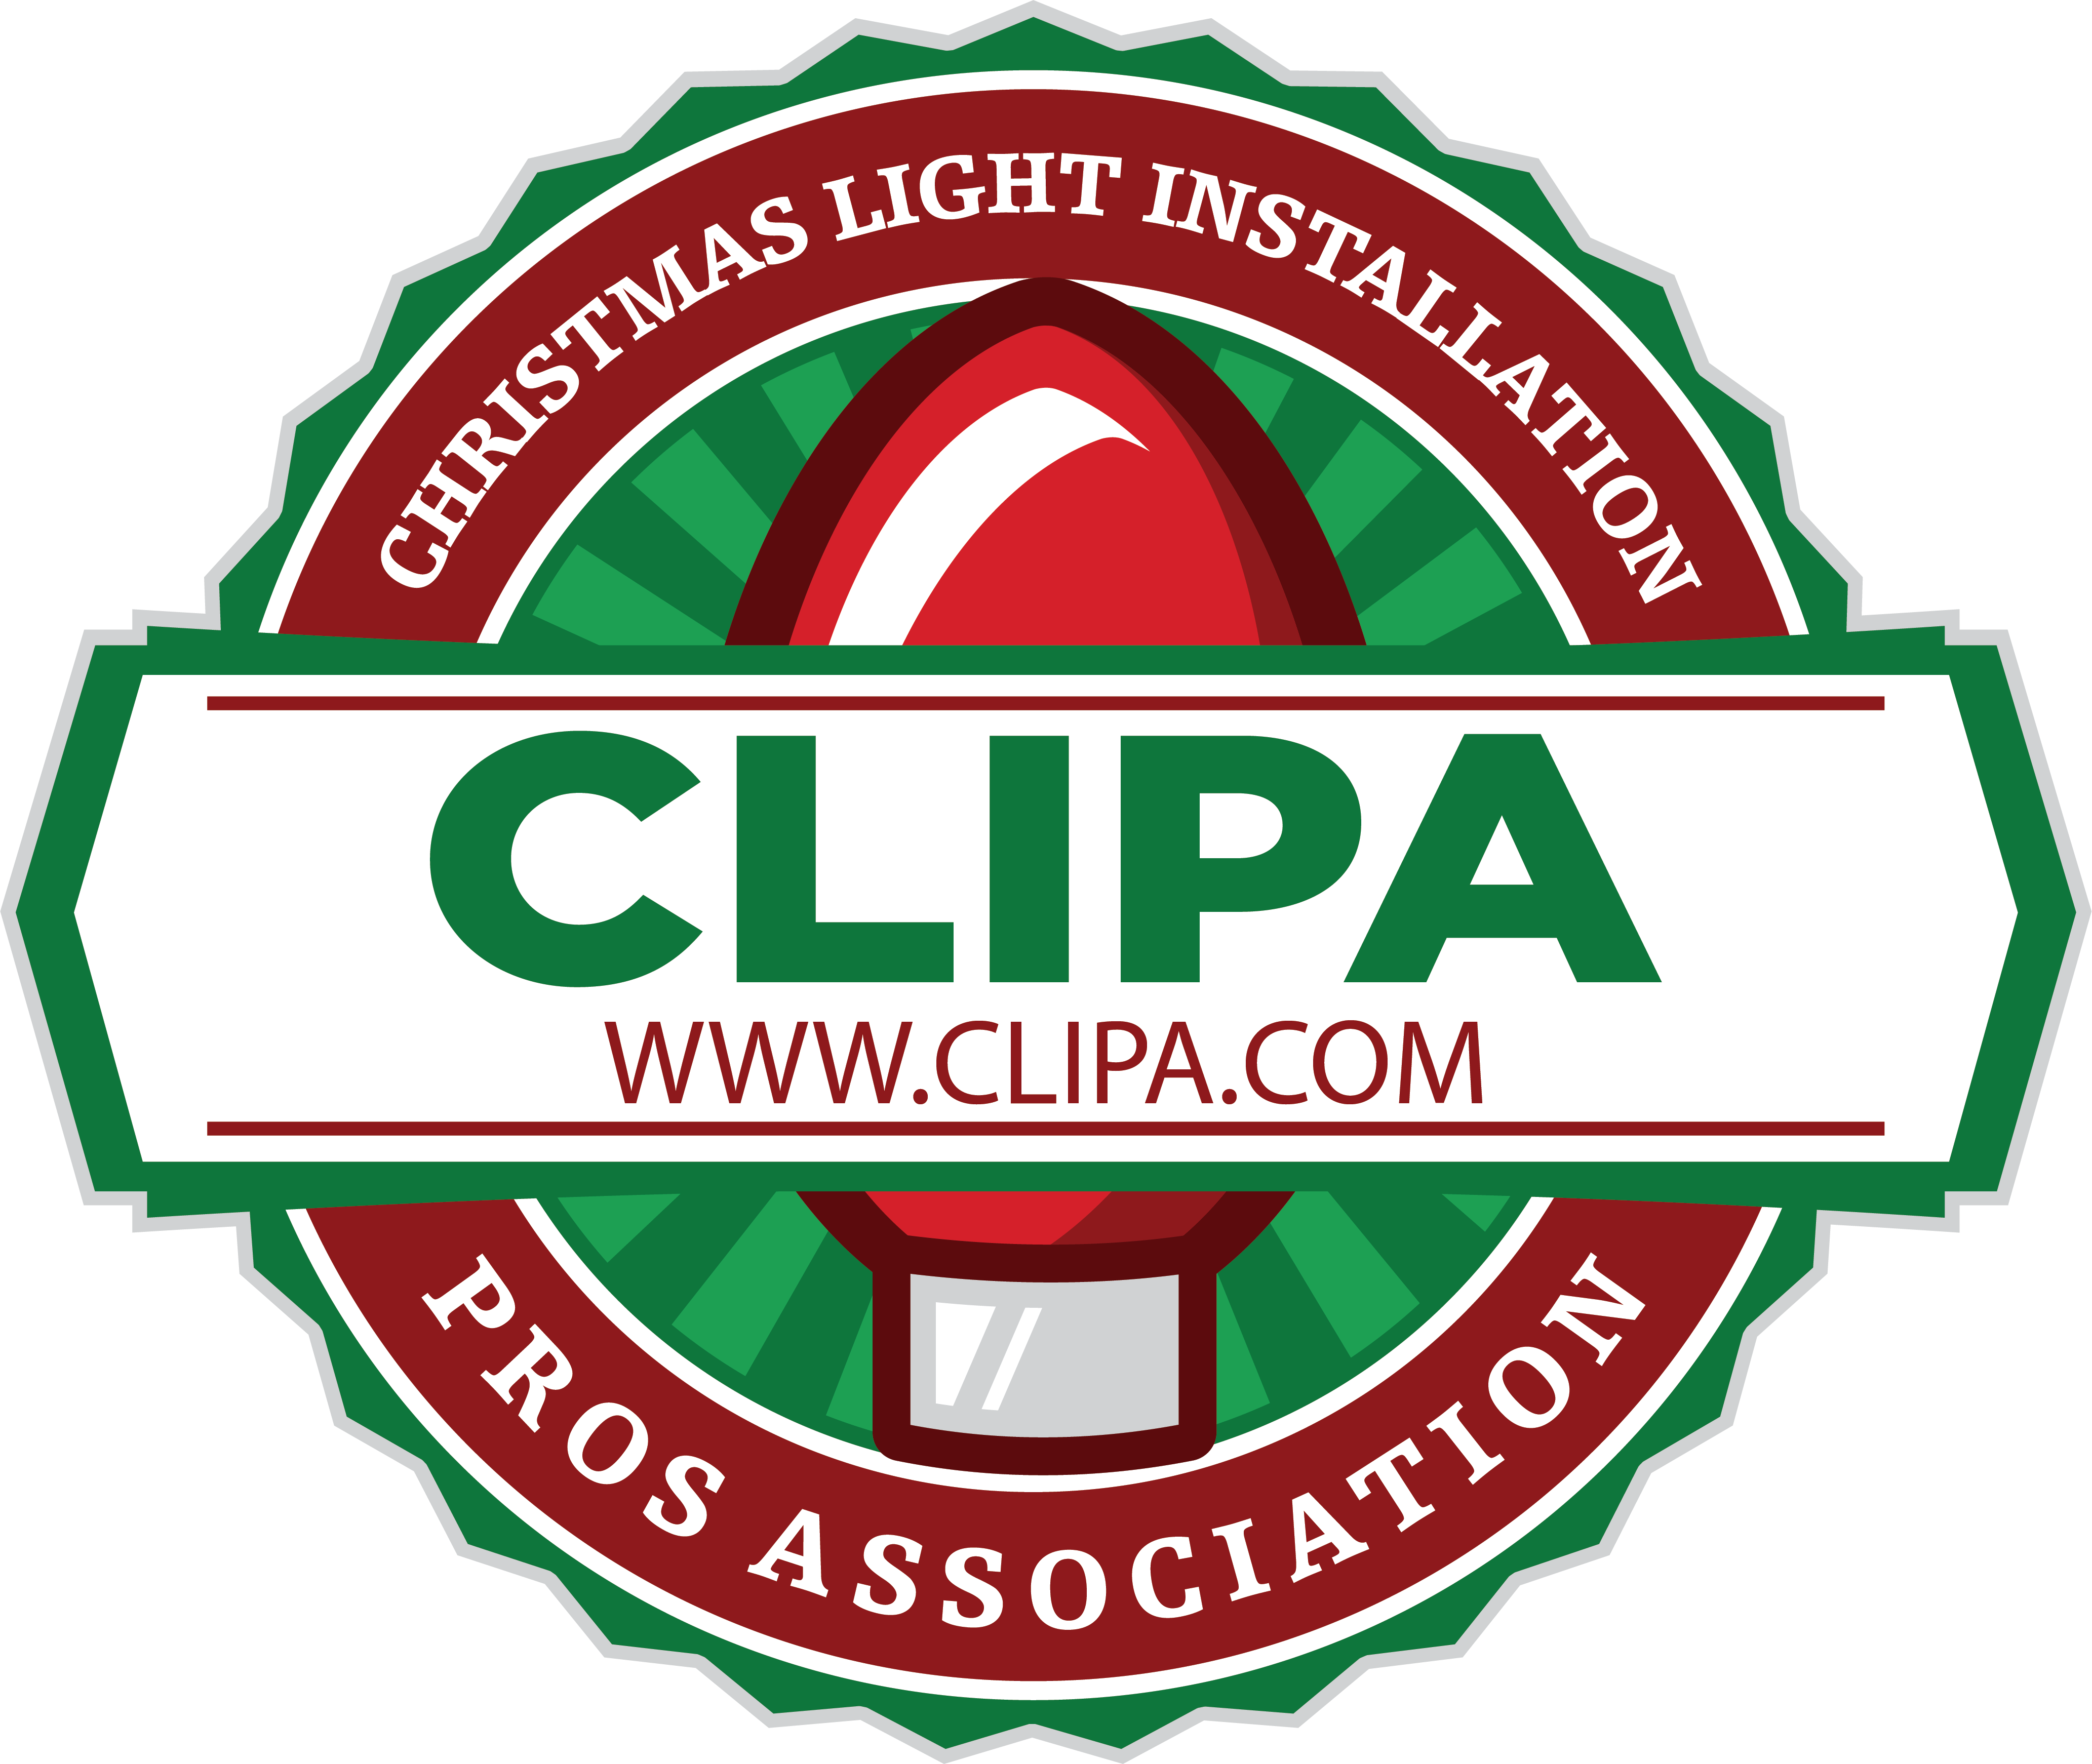 Christmas Light Installation Pros Association Logo